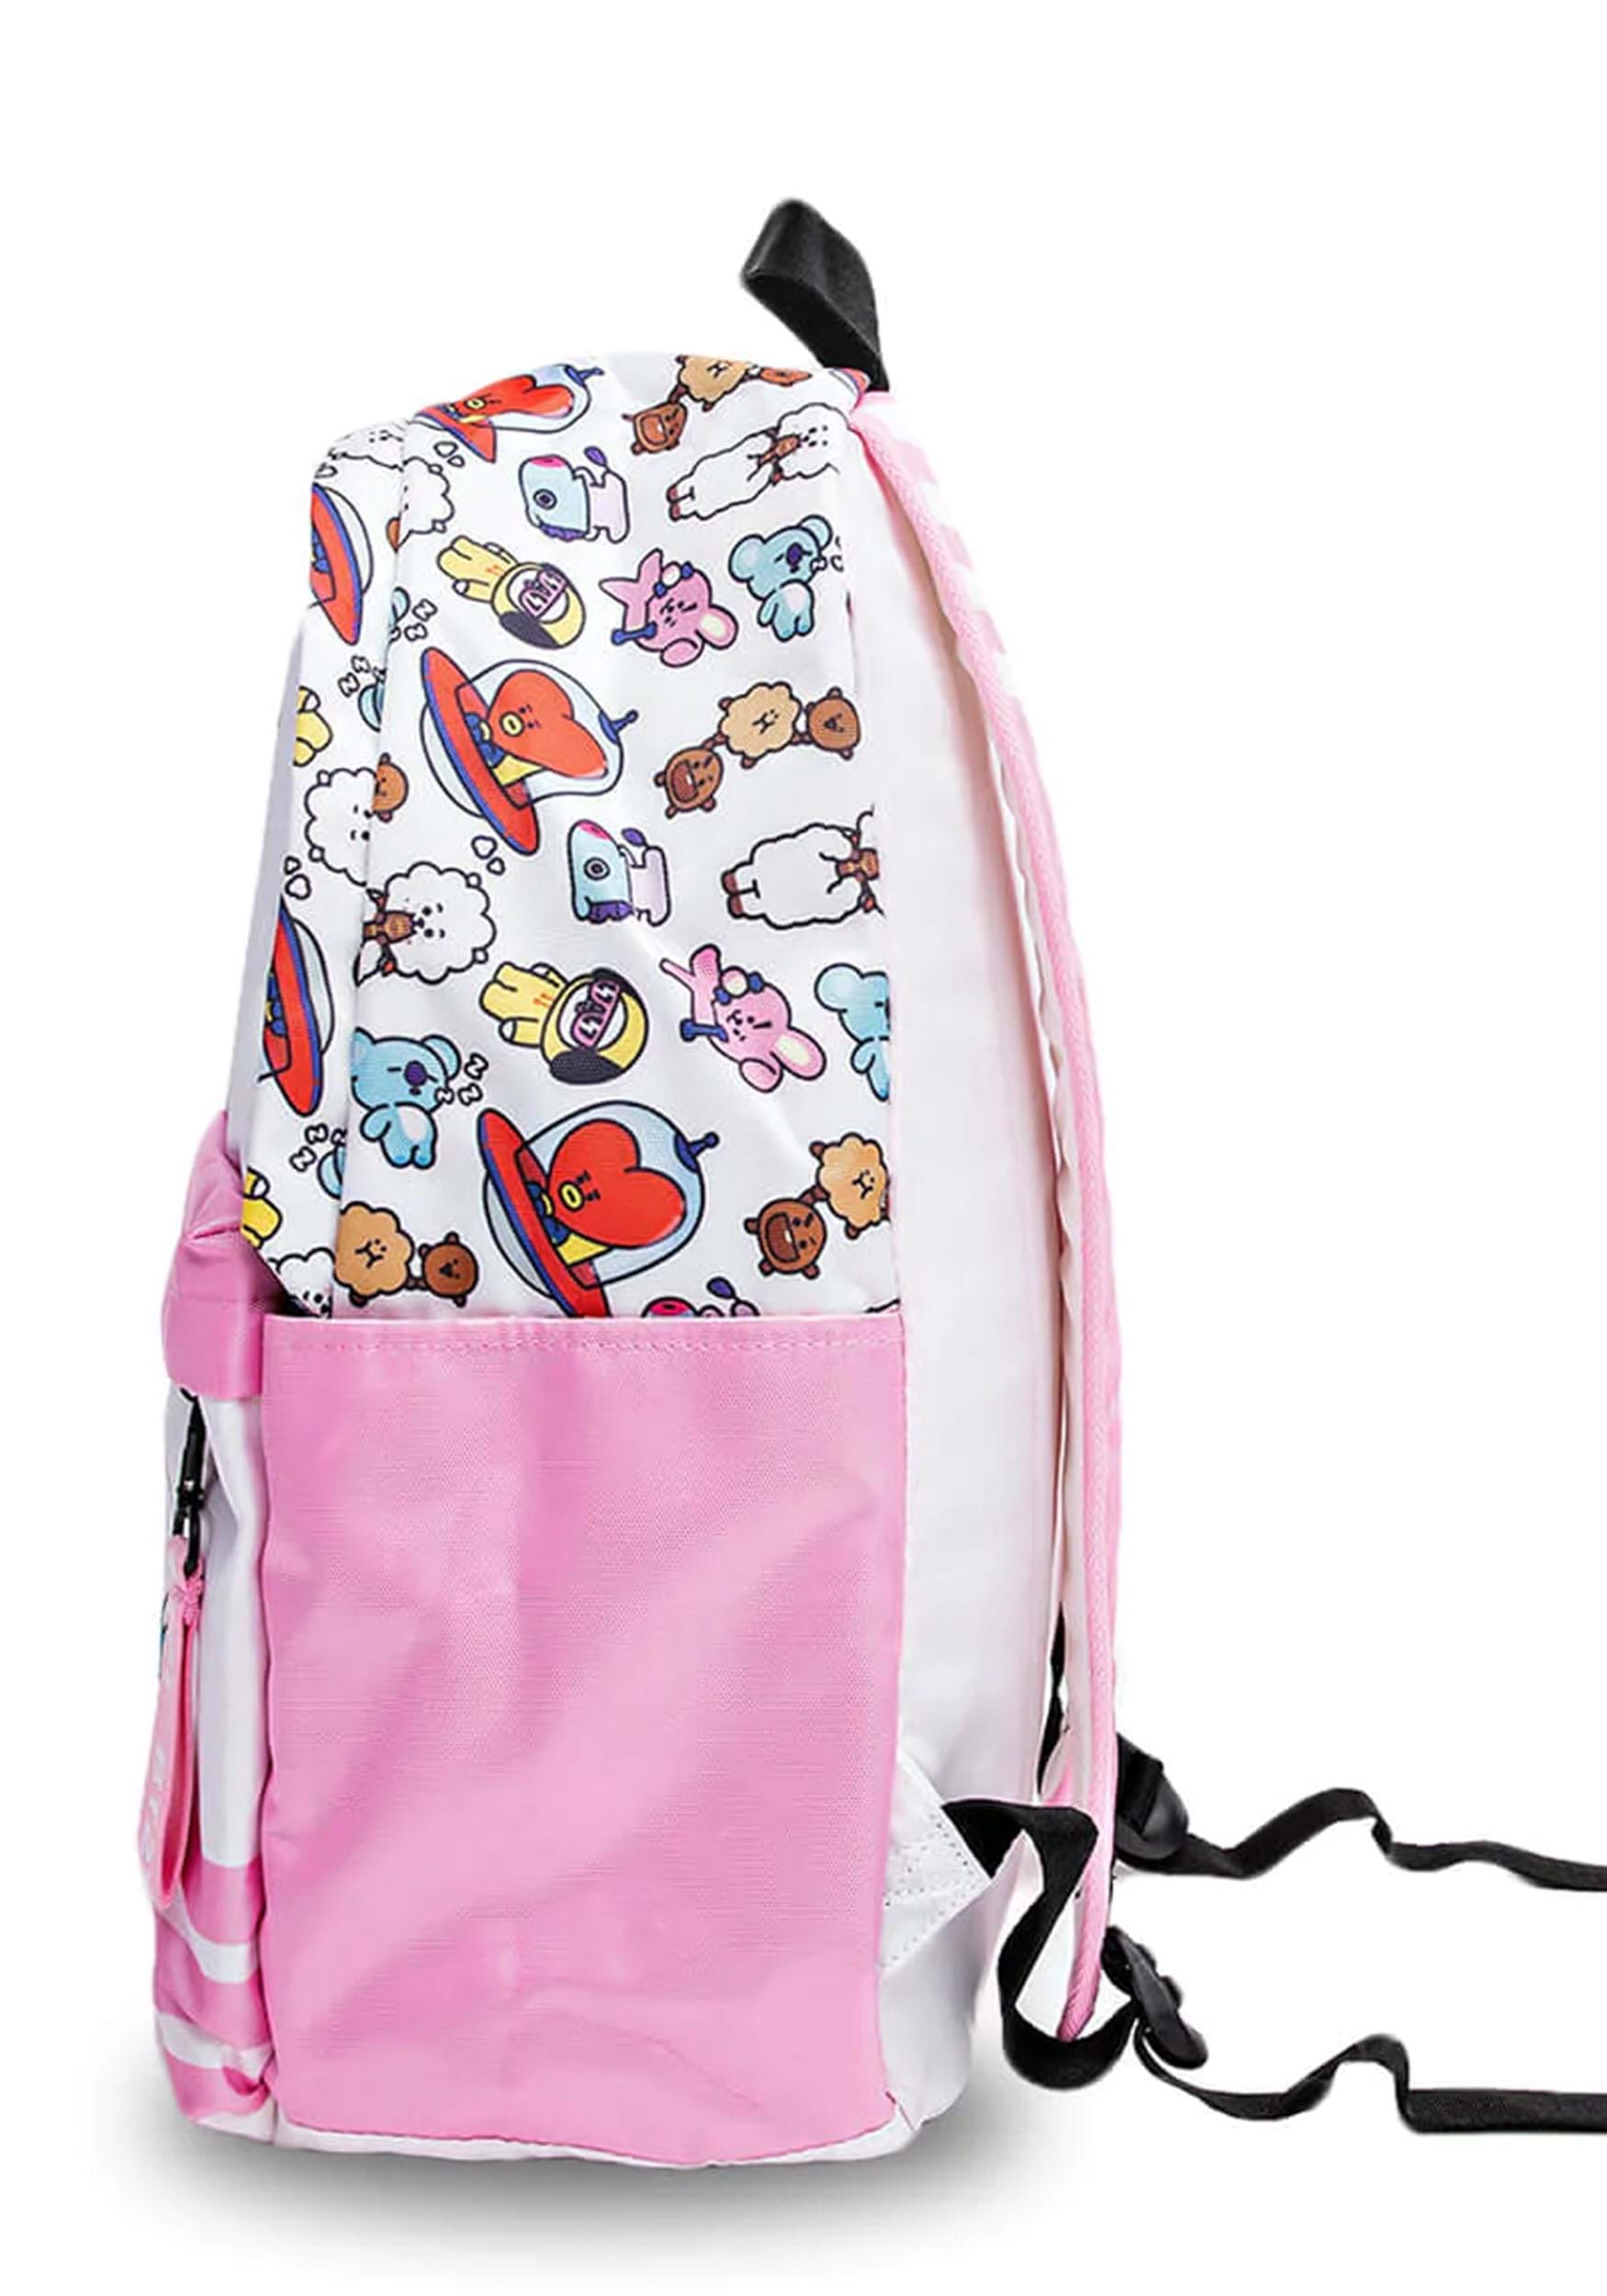 Bts Backpacks / School Bags / Boys Bags / Girls Bags / Character